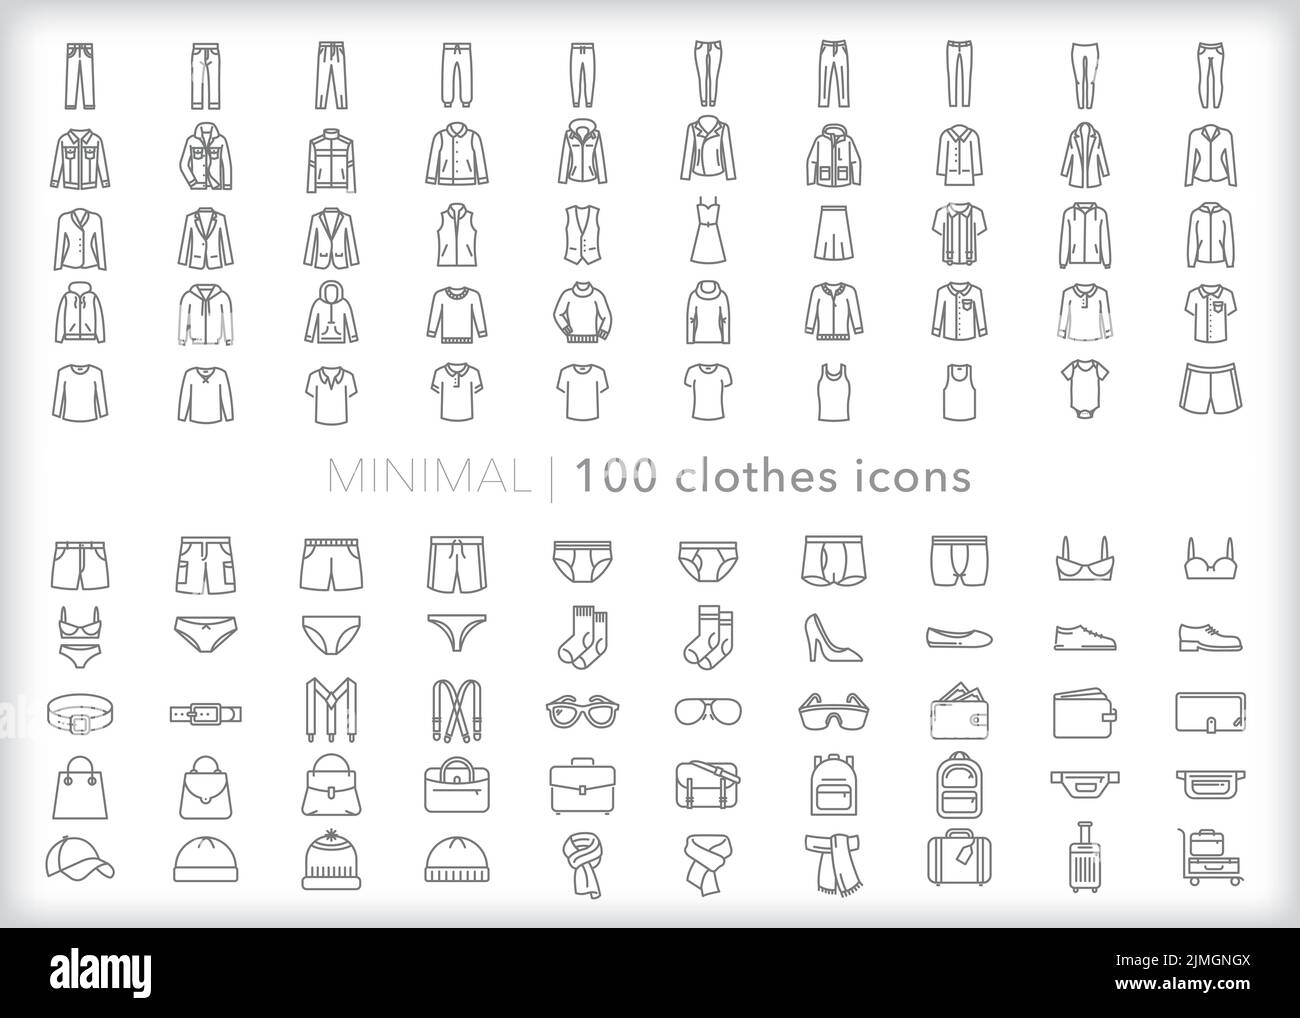 Set mit 100 Kleidungssymbolen für Männer, Frauen und Kinder, die sich mit Hemden, Hosen, Shorts, Unterwäsche und mehr kleiden Stock Vektor